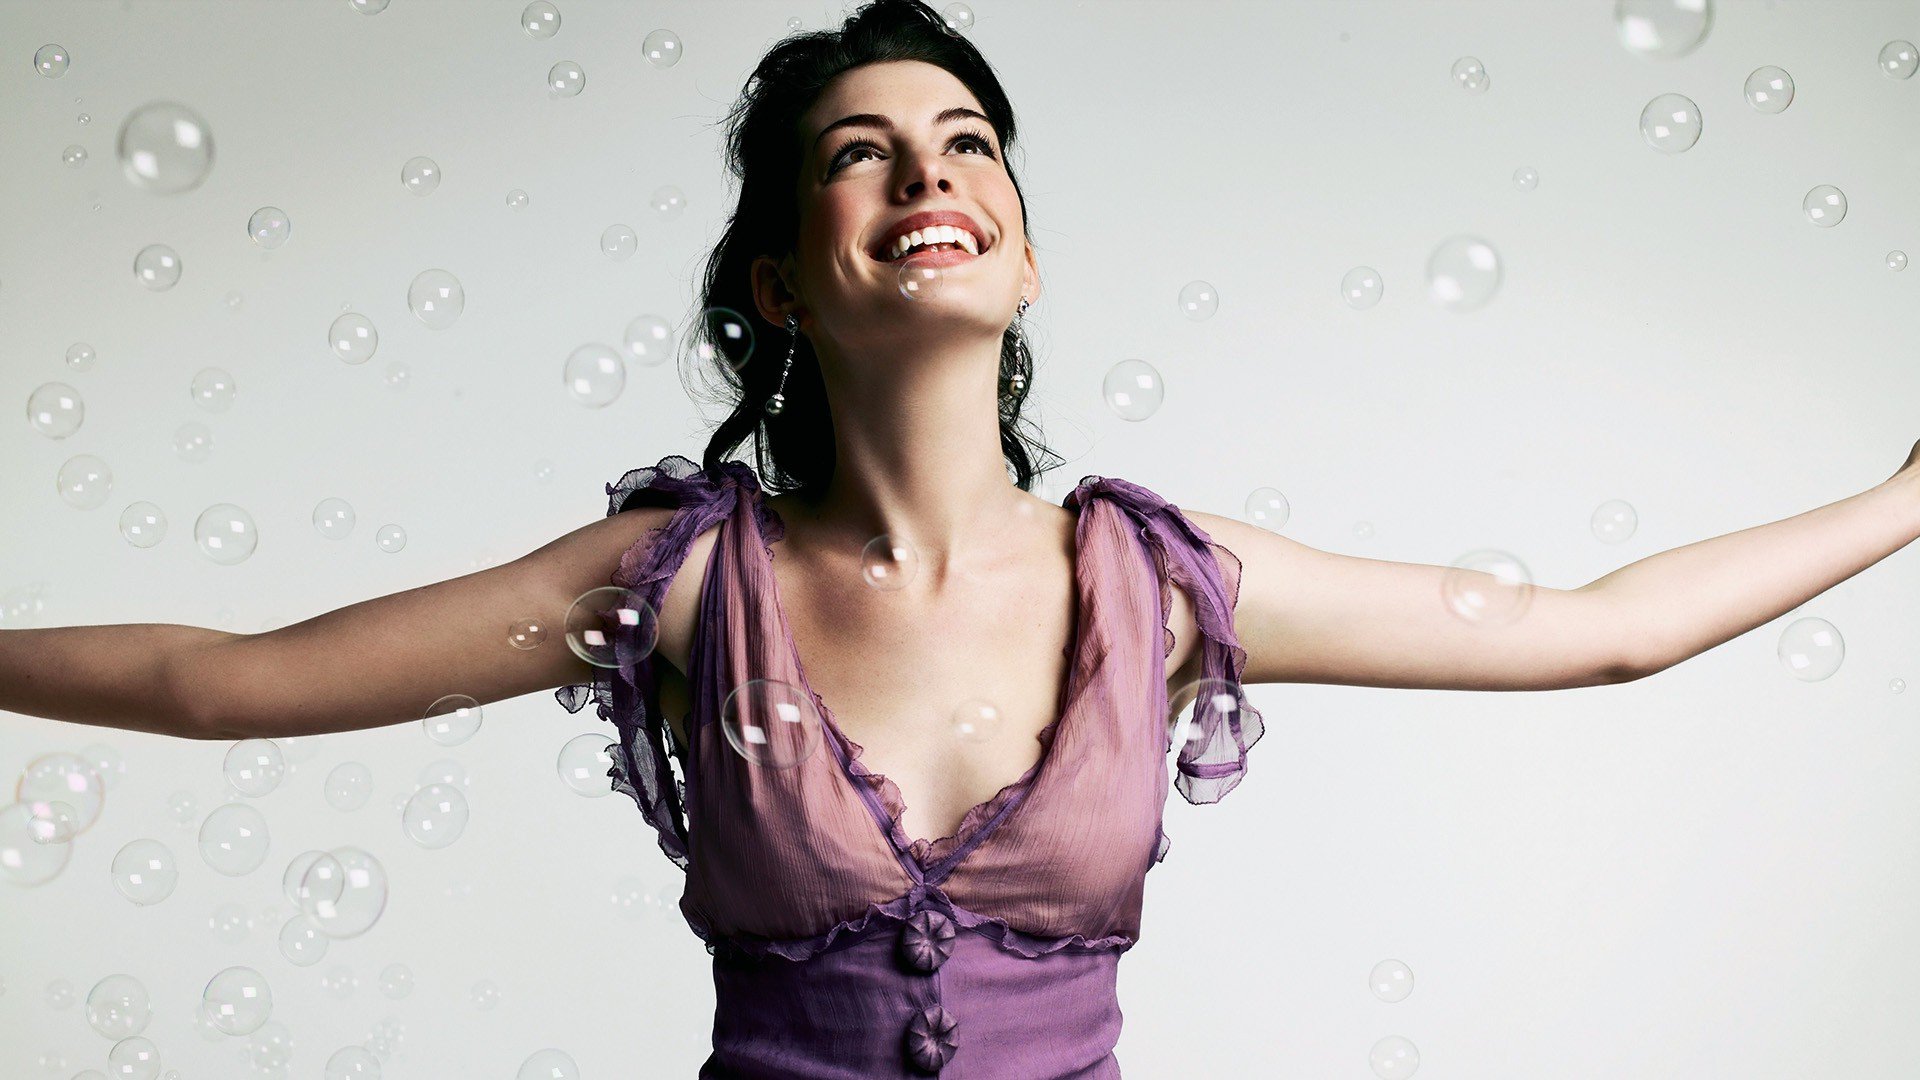 Бесплатное фото Энн Хэтэуэй наслаждается мыльными пузырями